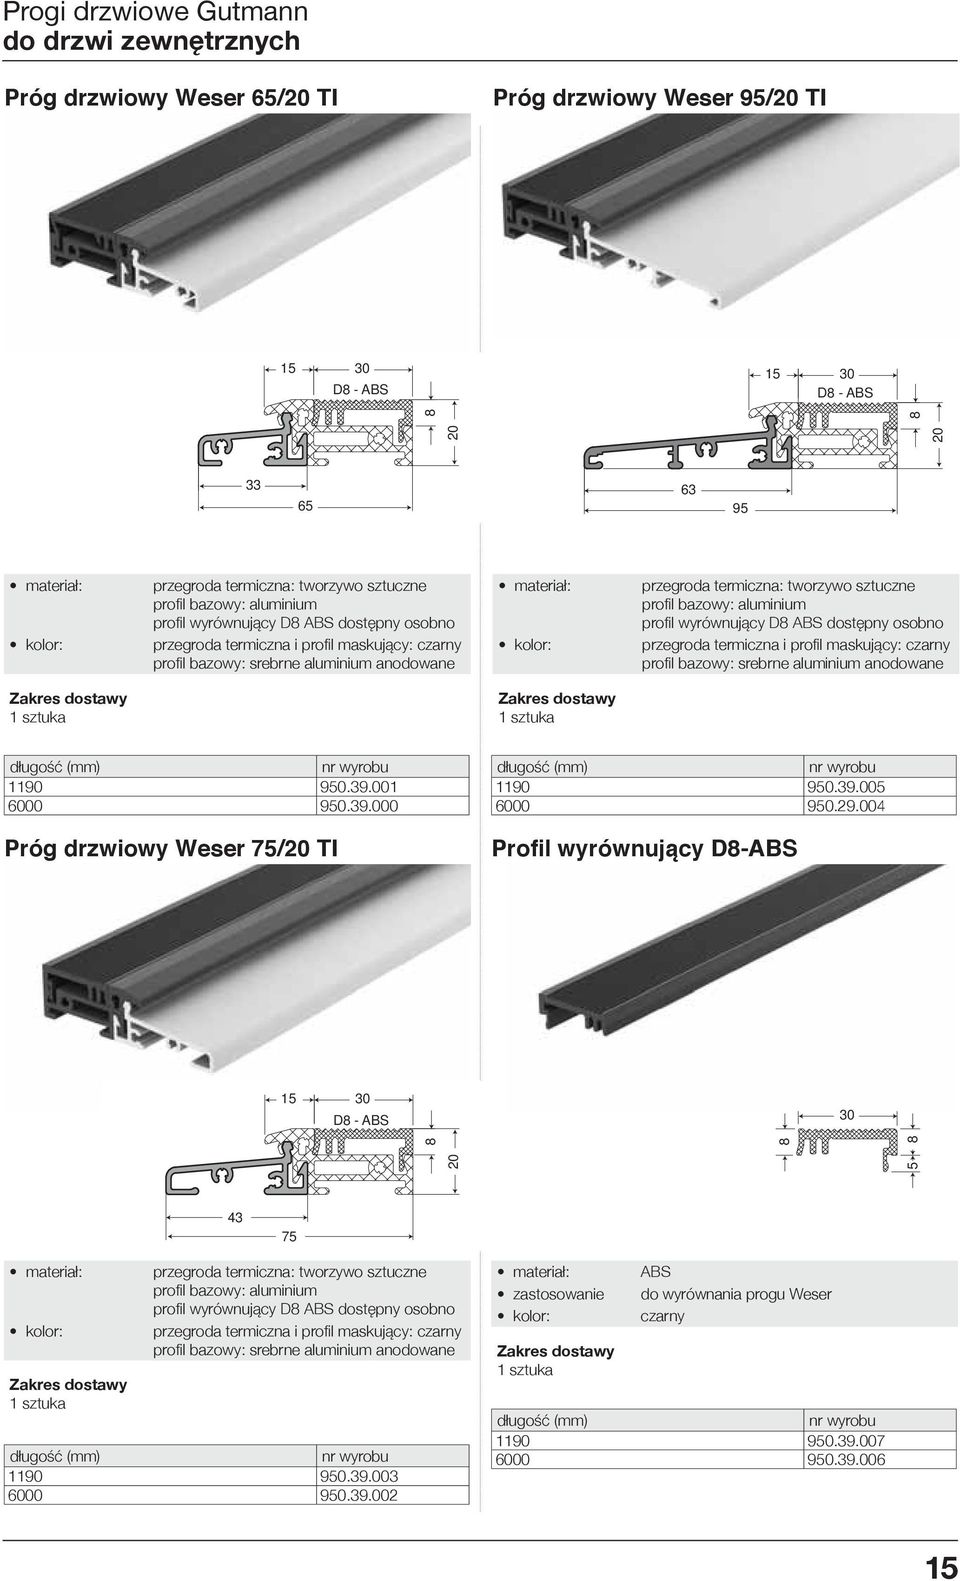 l wyrównujący D8 ABS dostępny osobno przegroda termiczna i profi l maskujący: czarny profi l bazowy: srebrne aluminium anodowane długość (mm) 1190 950.39.